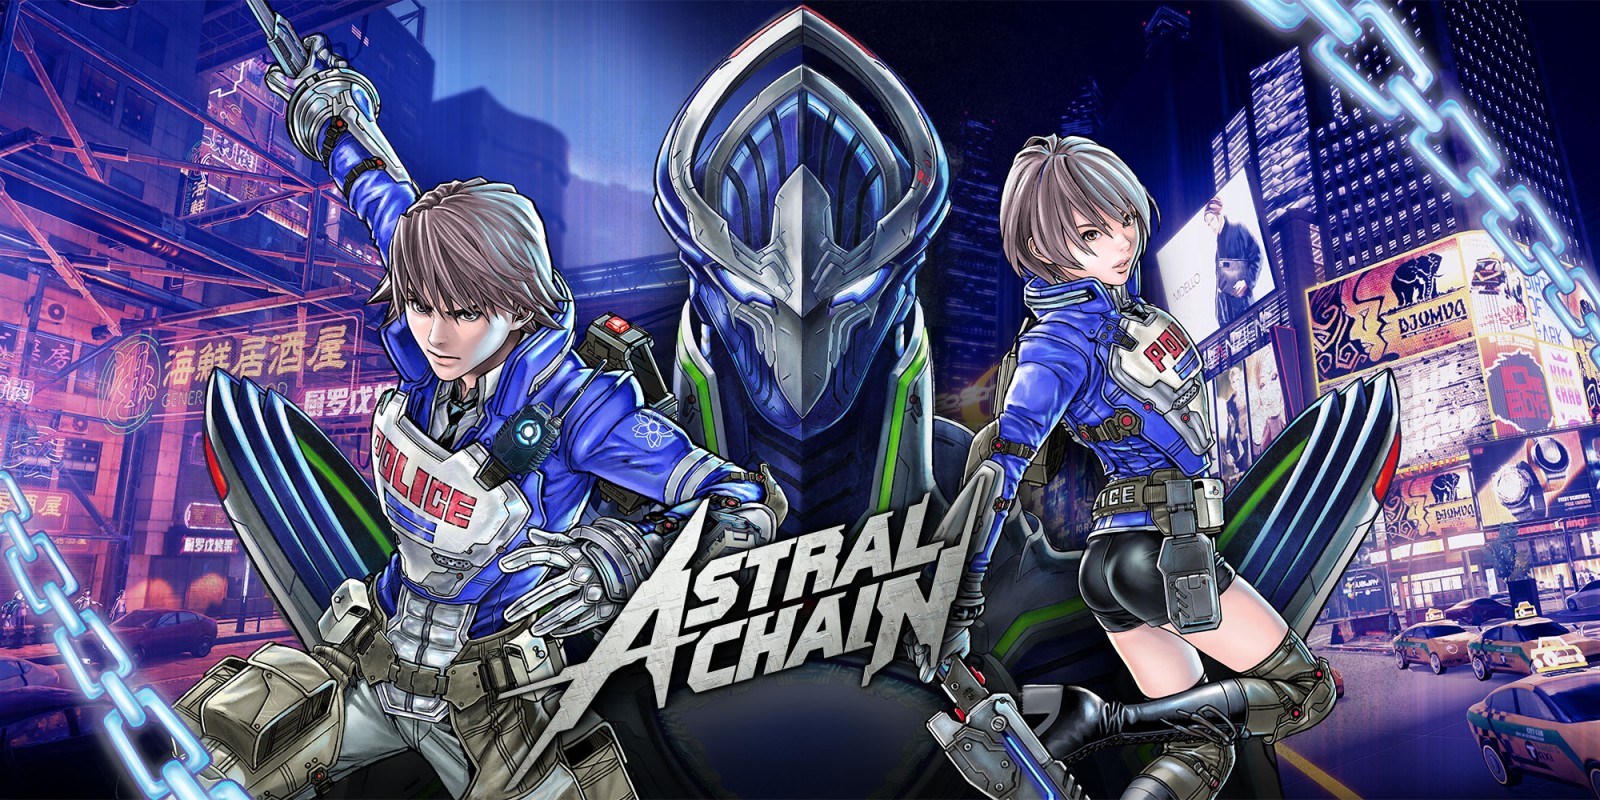 Il Director di Astral Chain fornisce nuove informazioni esclusive sul gioco